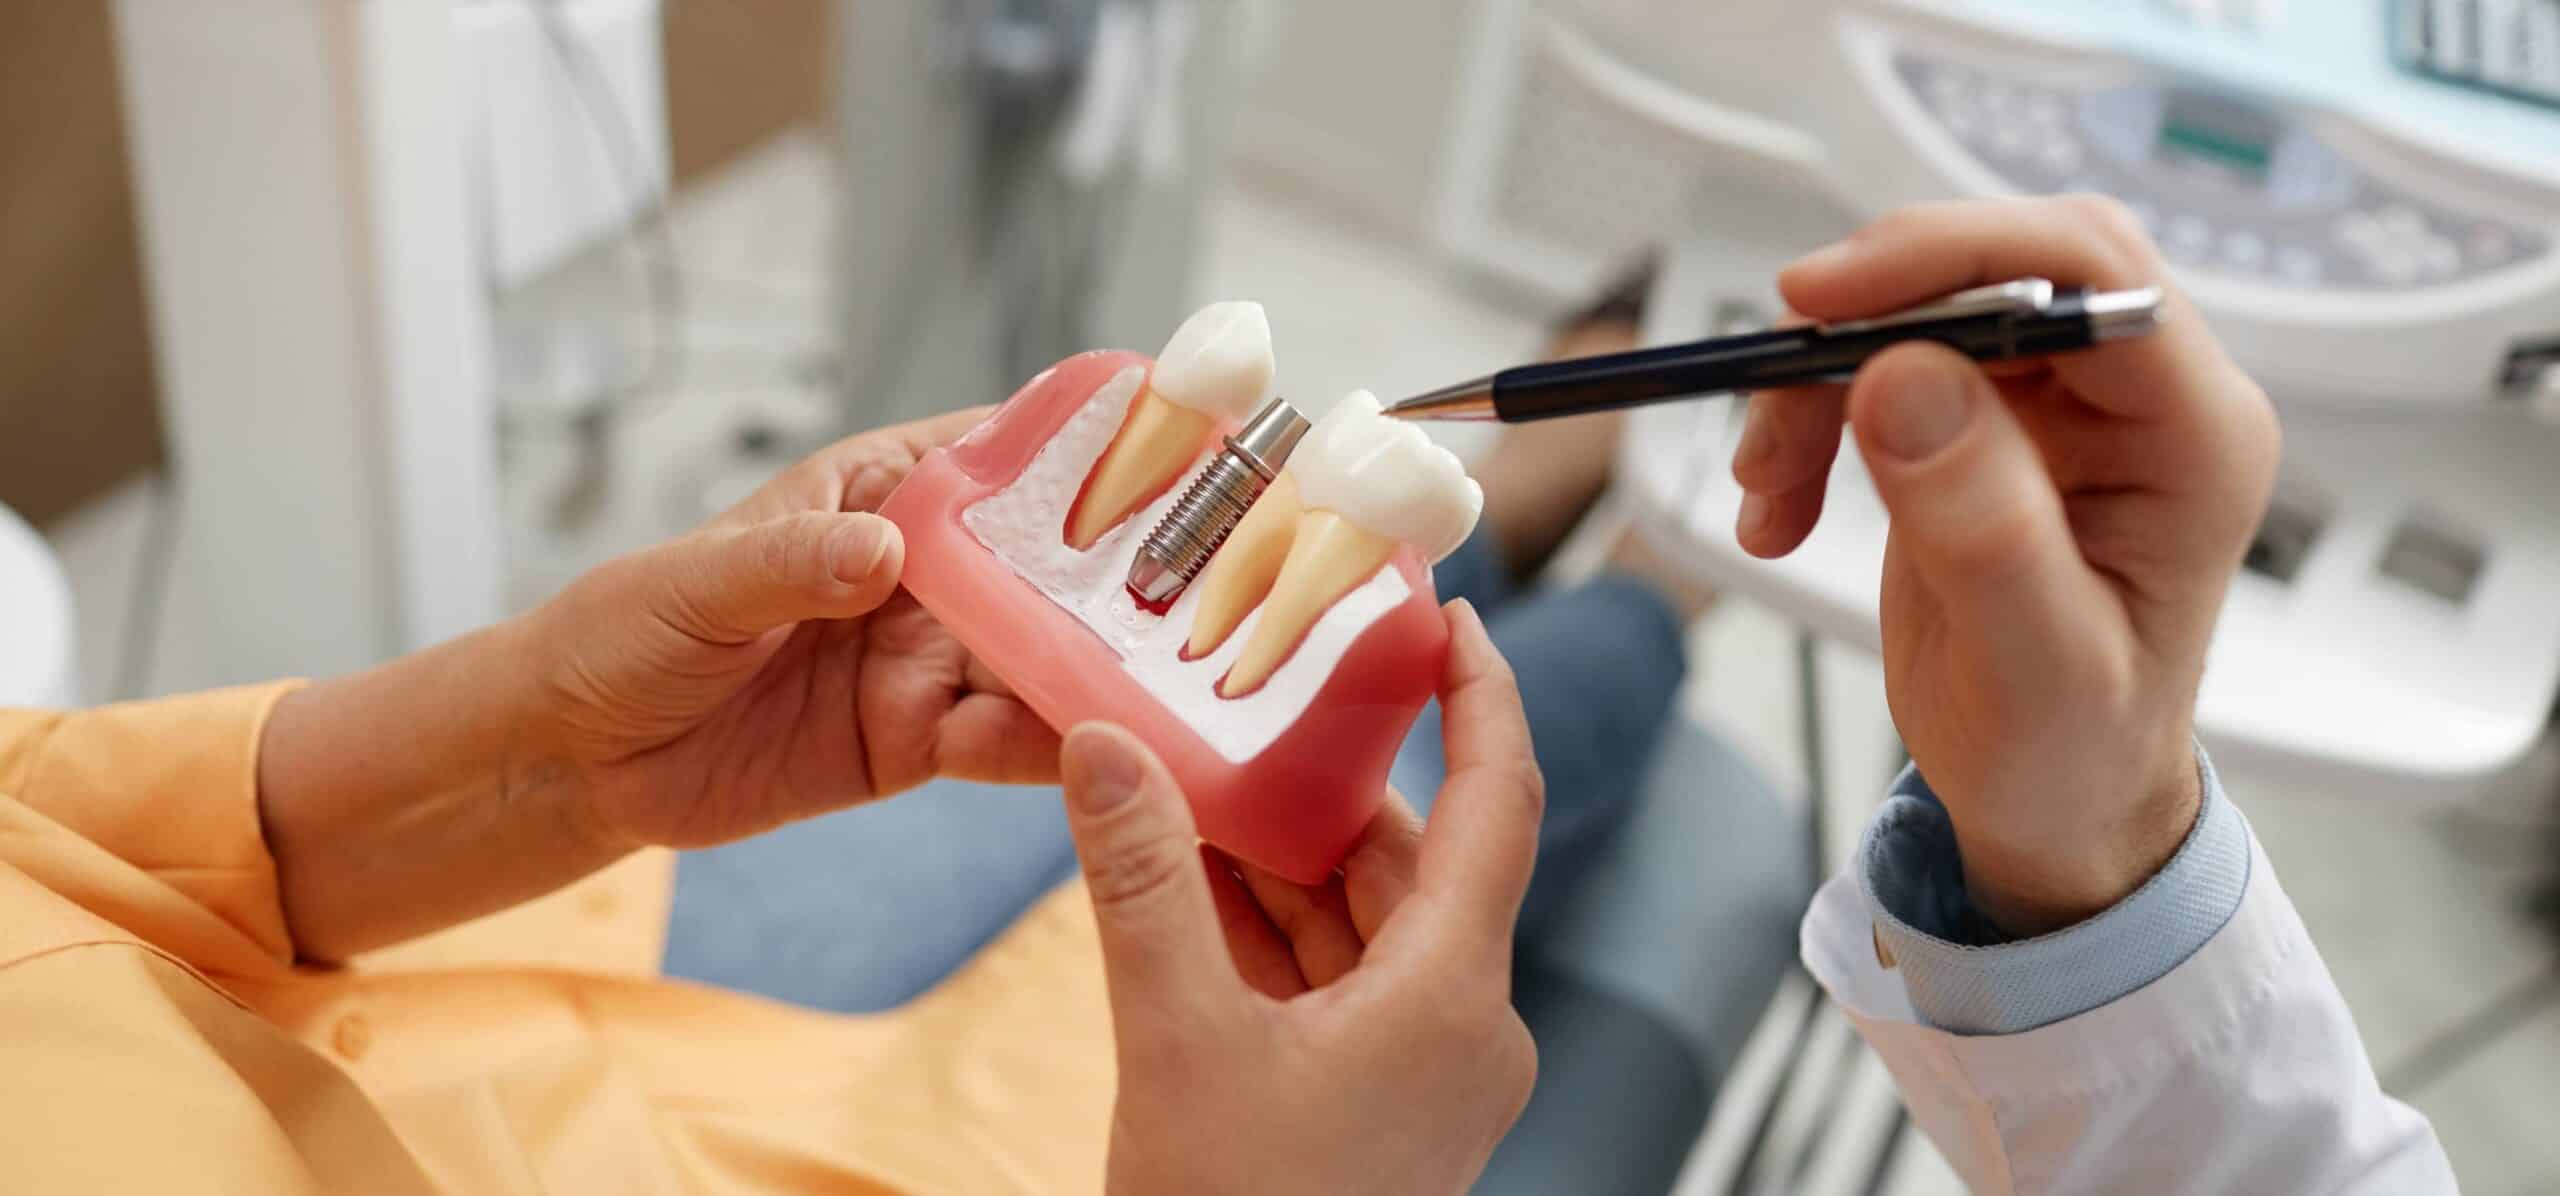 Implantologie dentaire | Dr Temstet | Paris